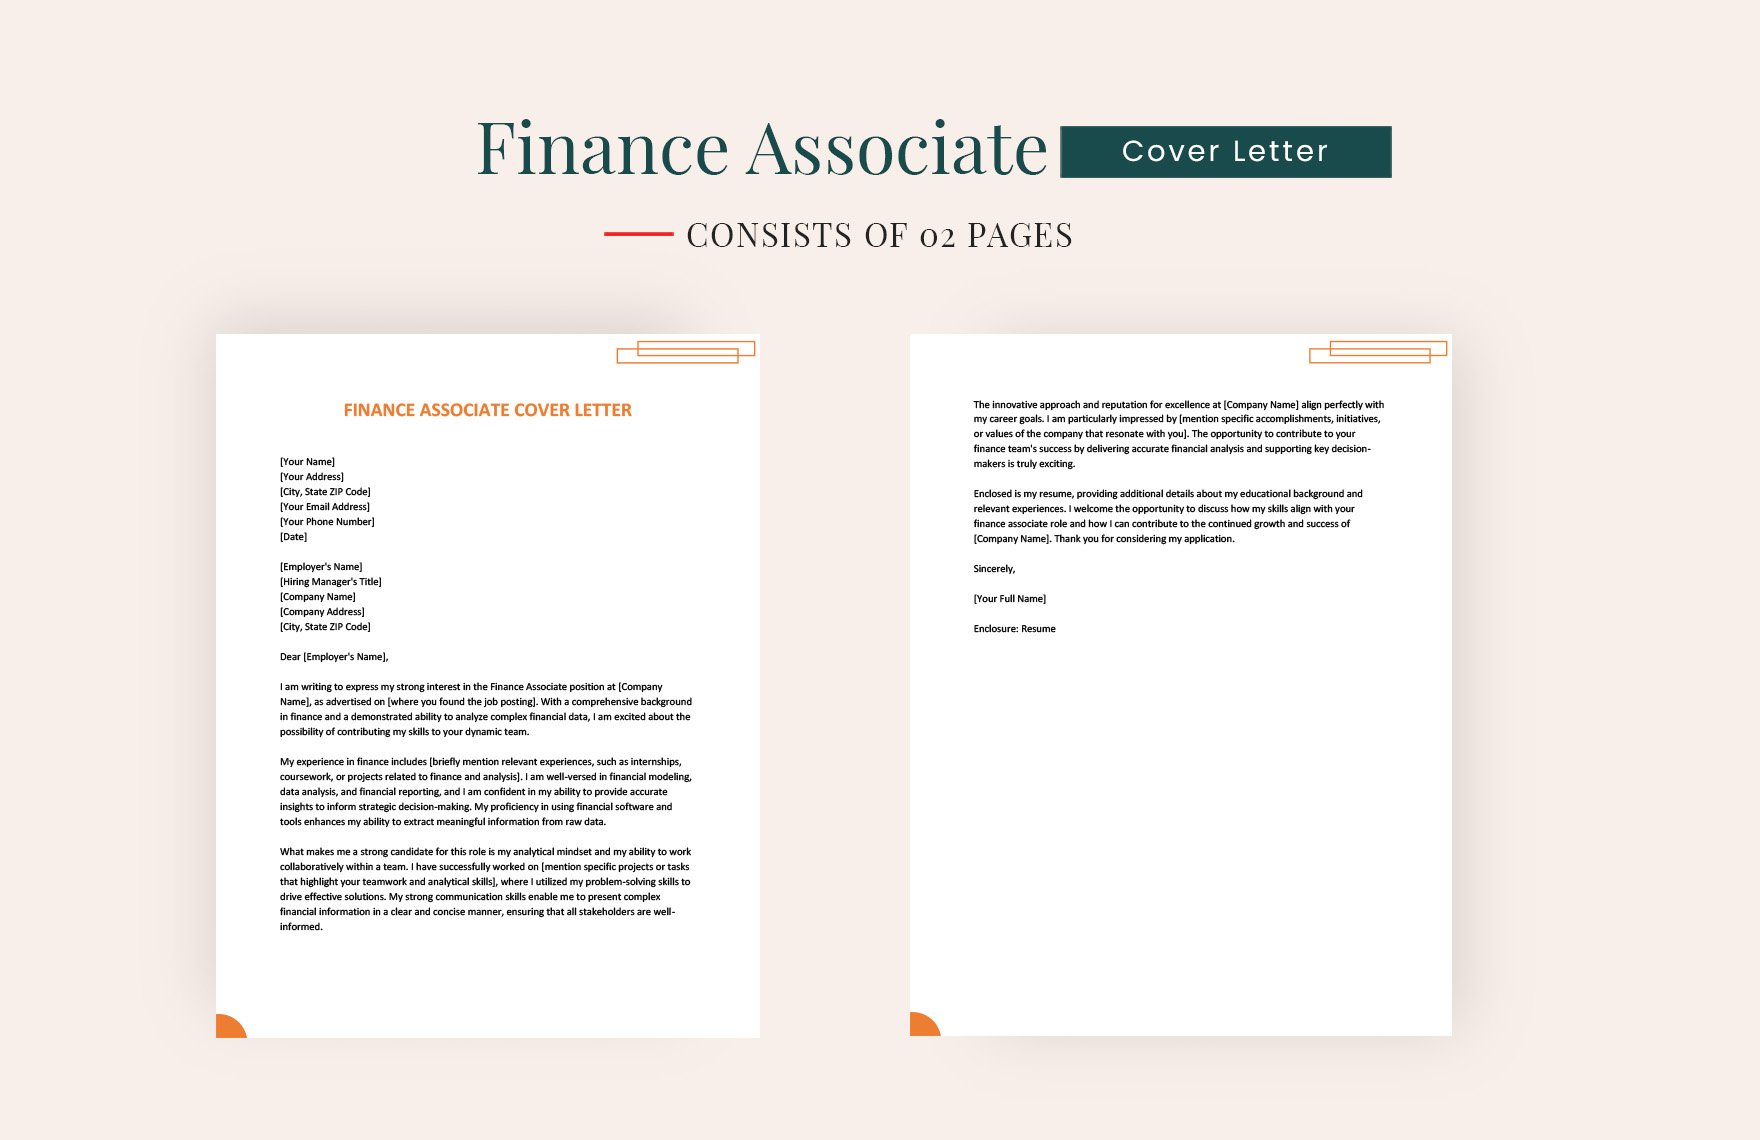 Finance Associate Cover Letter